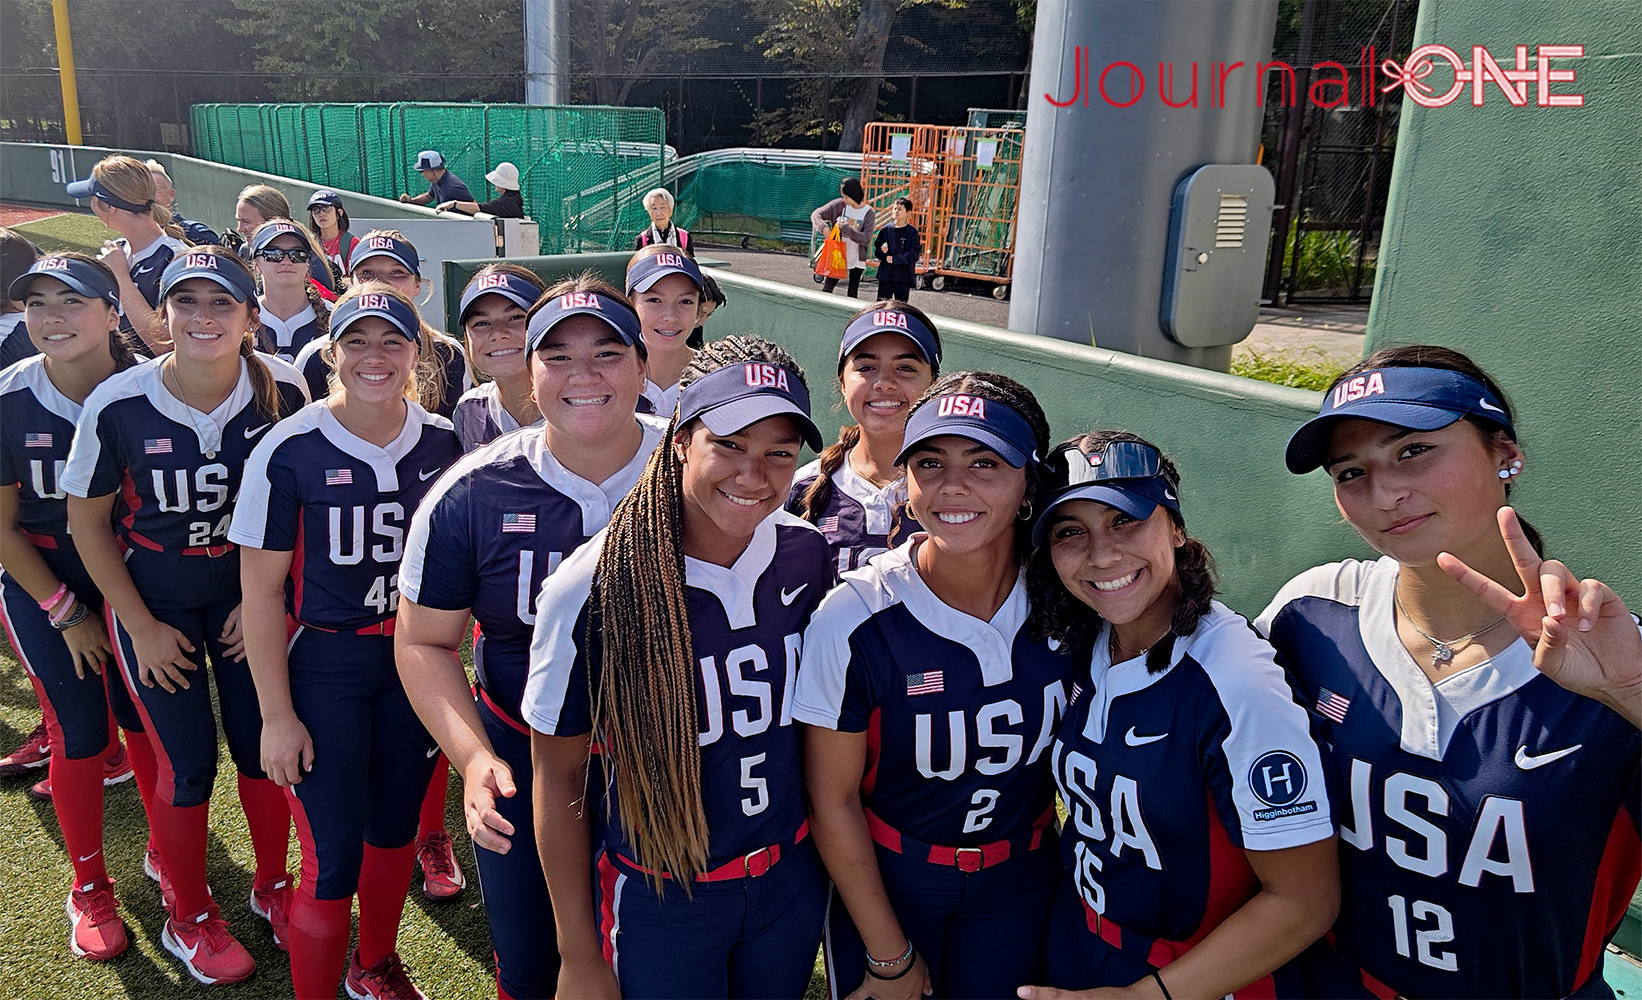 女子ソフトボールU15ワールドカップ| 開会式前にカメラに笑顔を見せるアメリカ代表の選手たち-Journal-ONE撮影